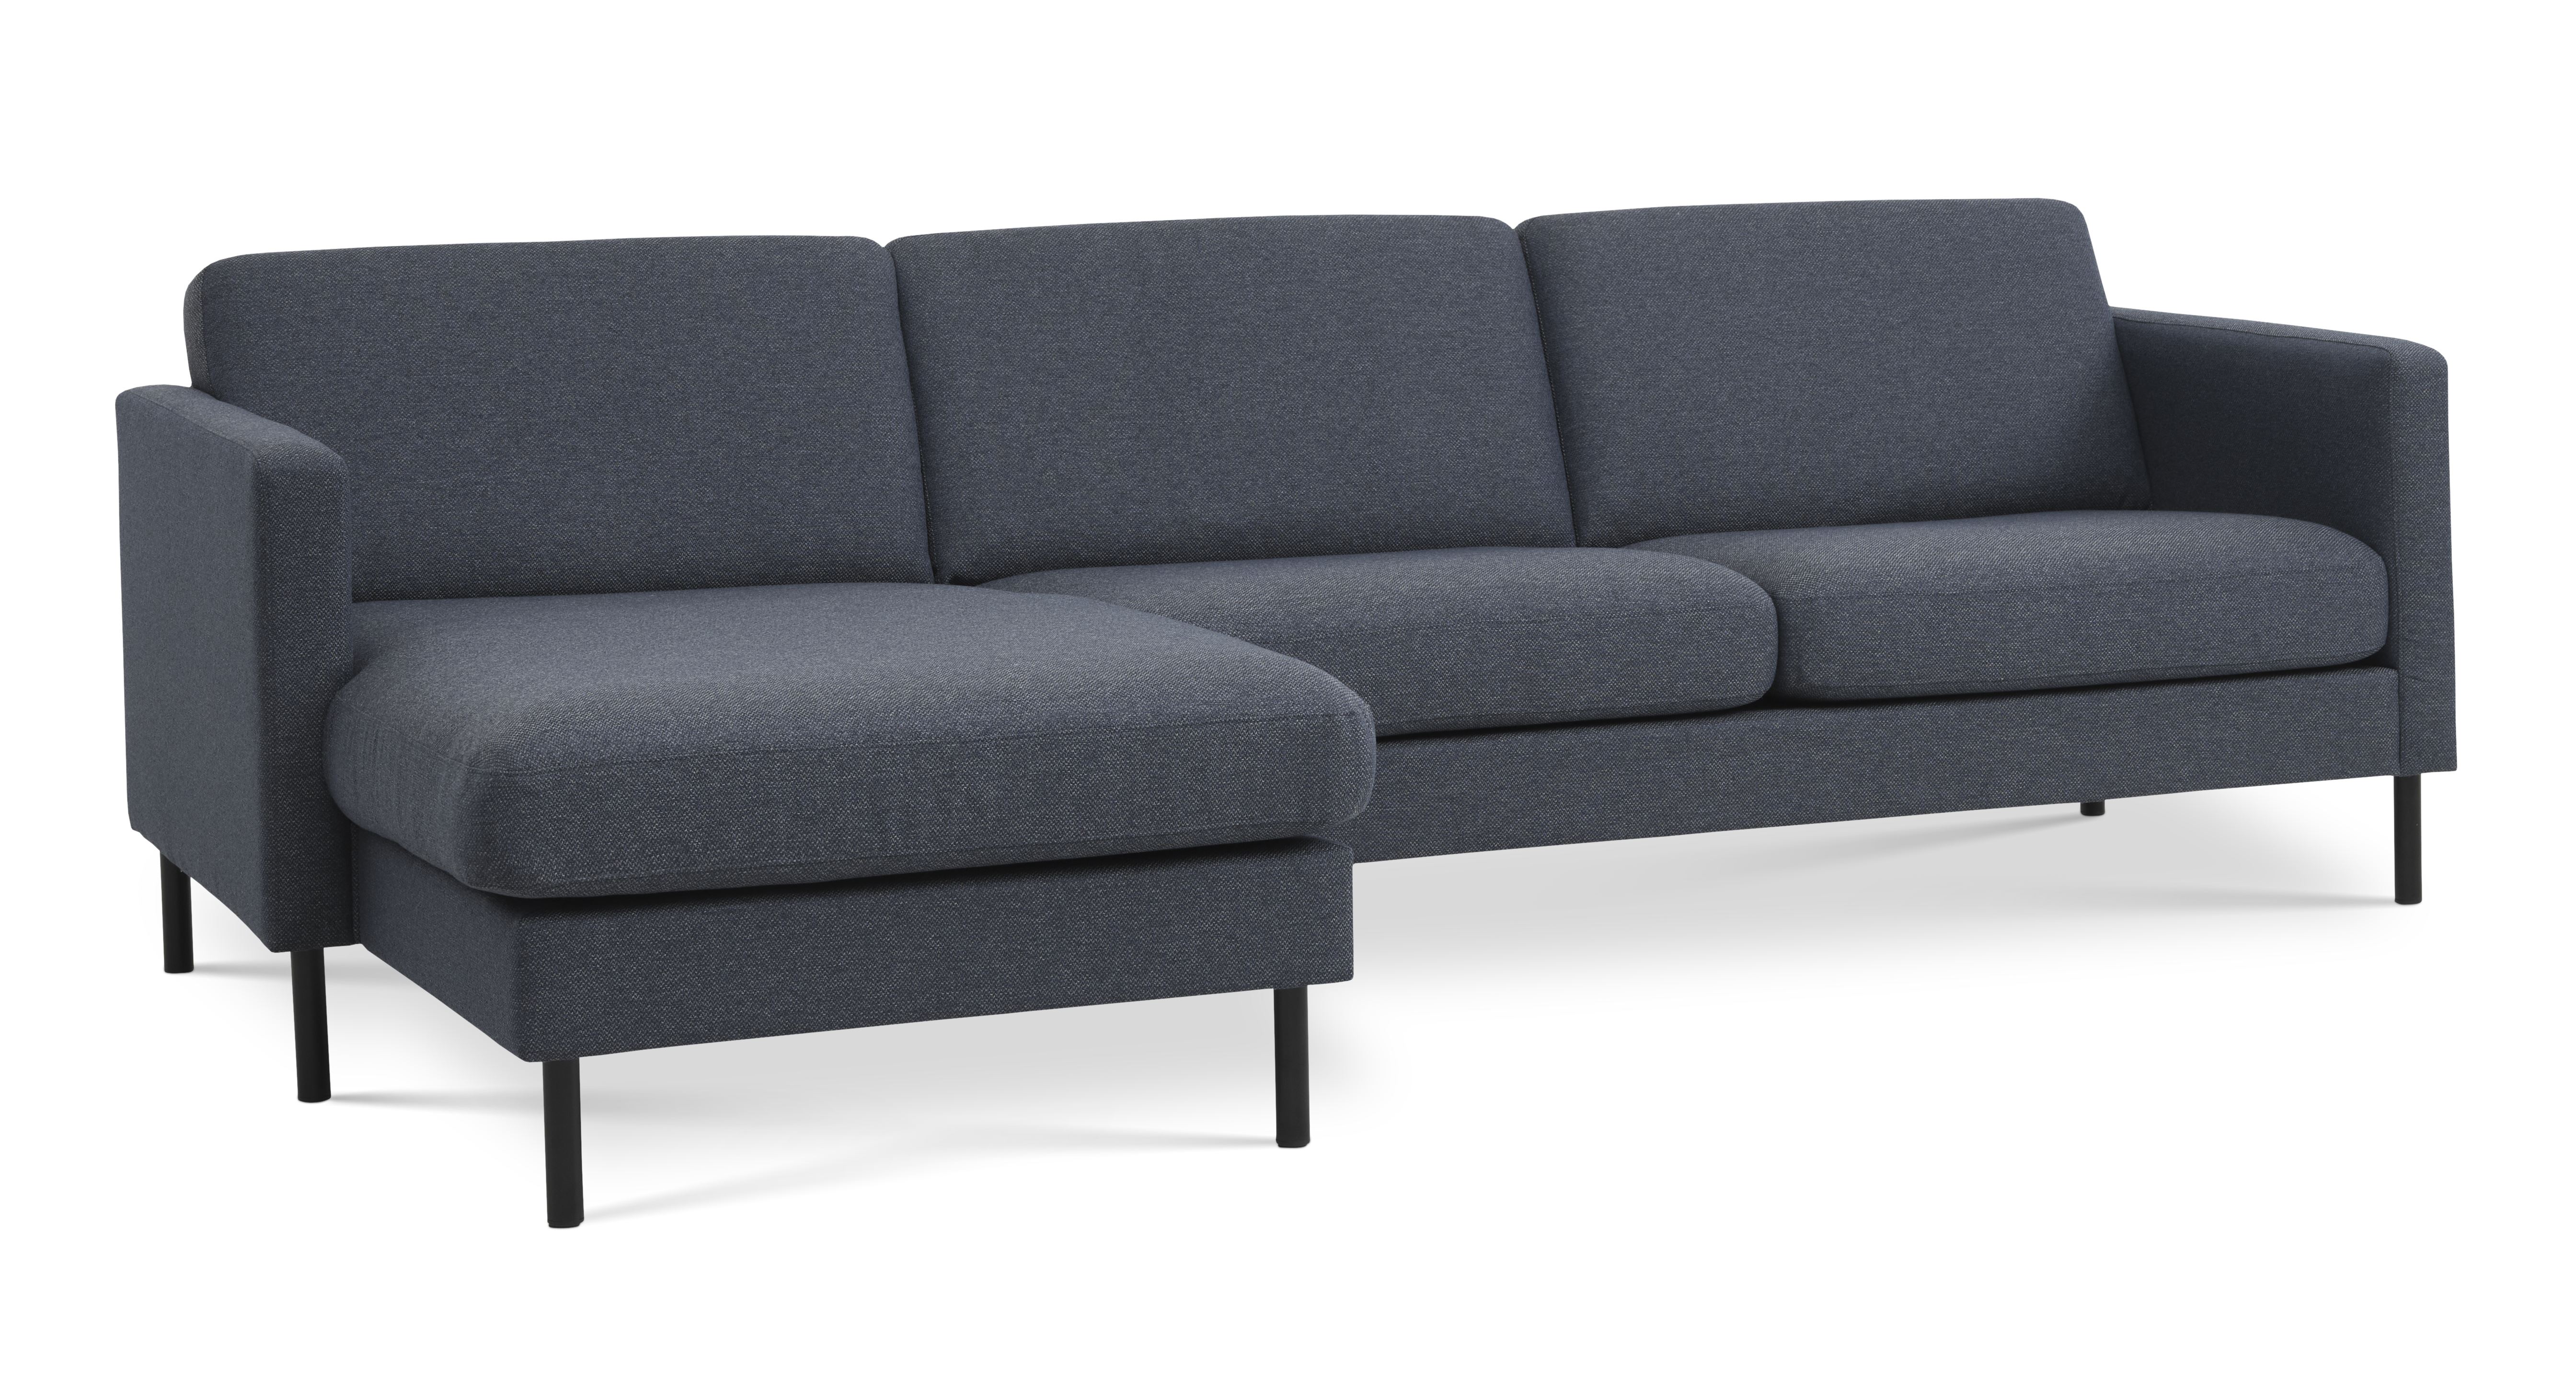 Ask sæt 51 3D sofa, m. chaiselong - navy blå polyester stof og sort metal